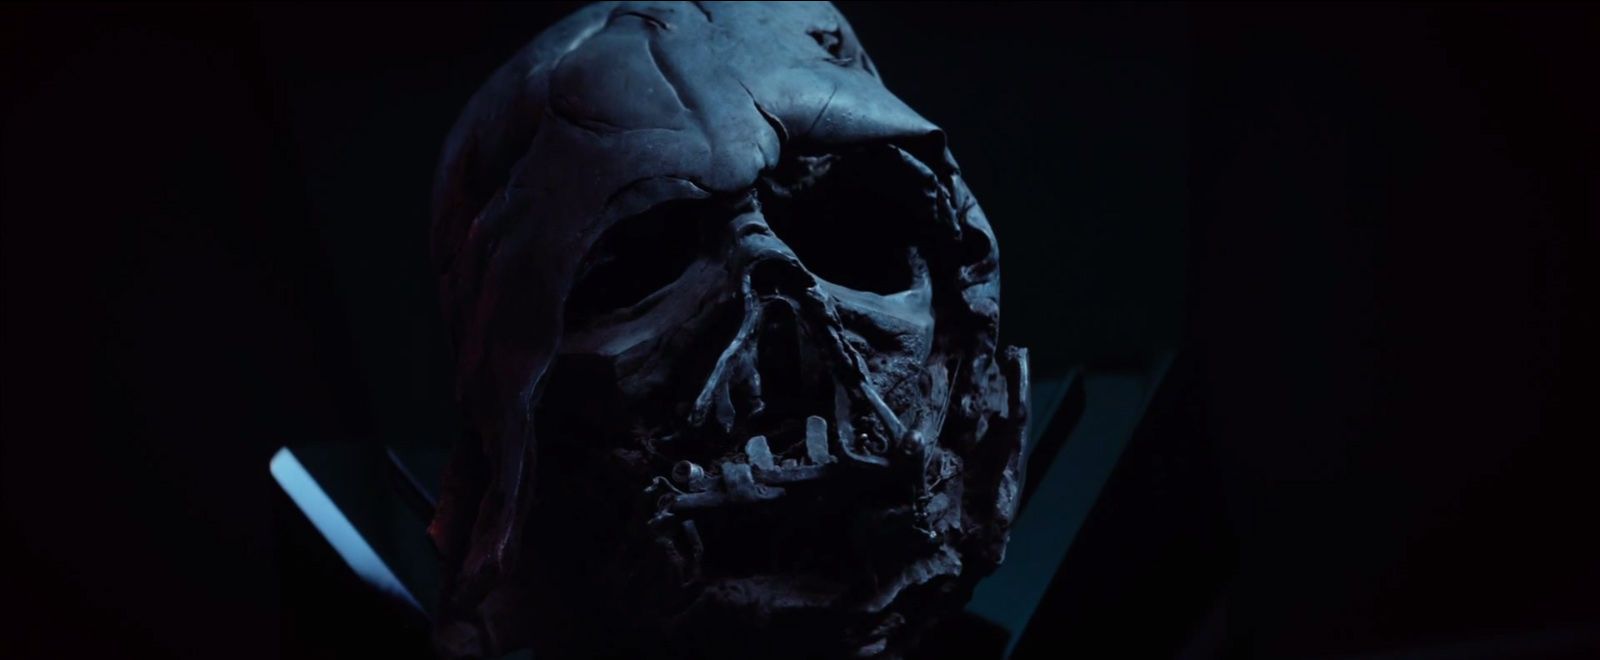 Star Wars 7 Trailer 2 - Darth Vader Burned Helmet